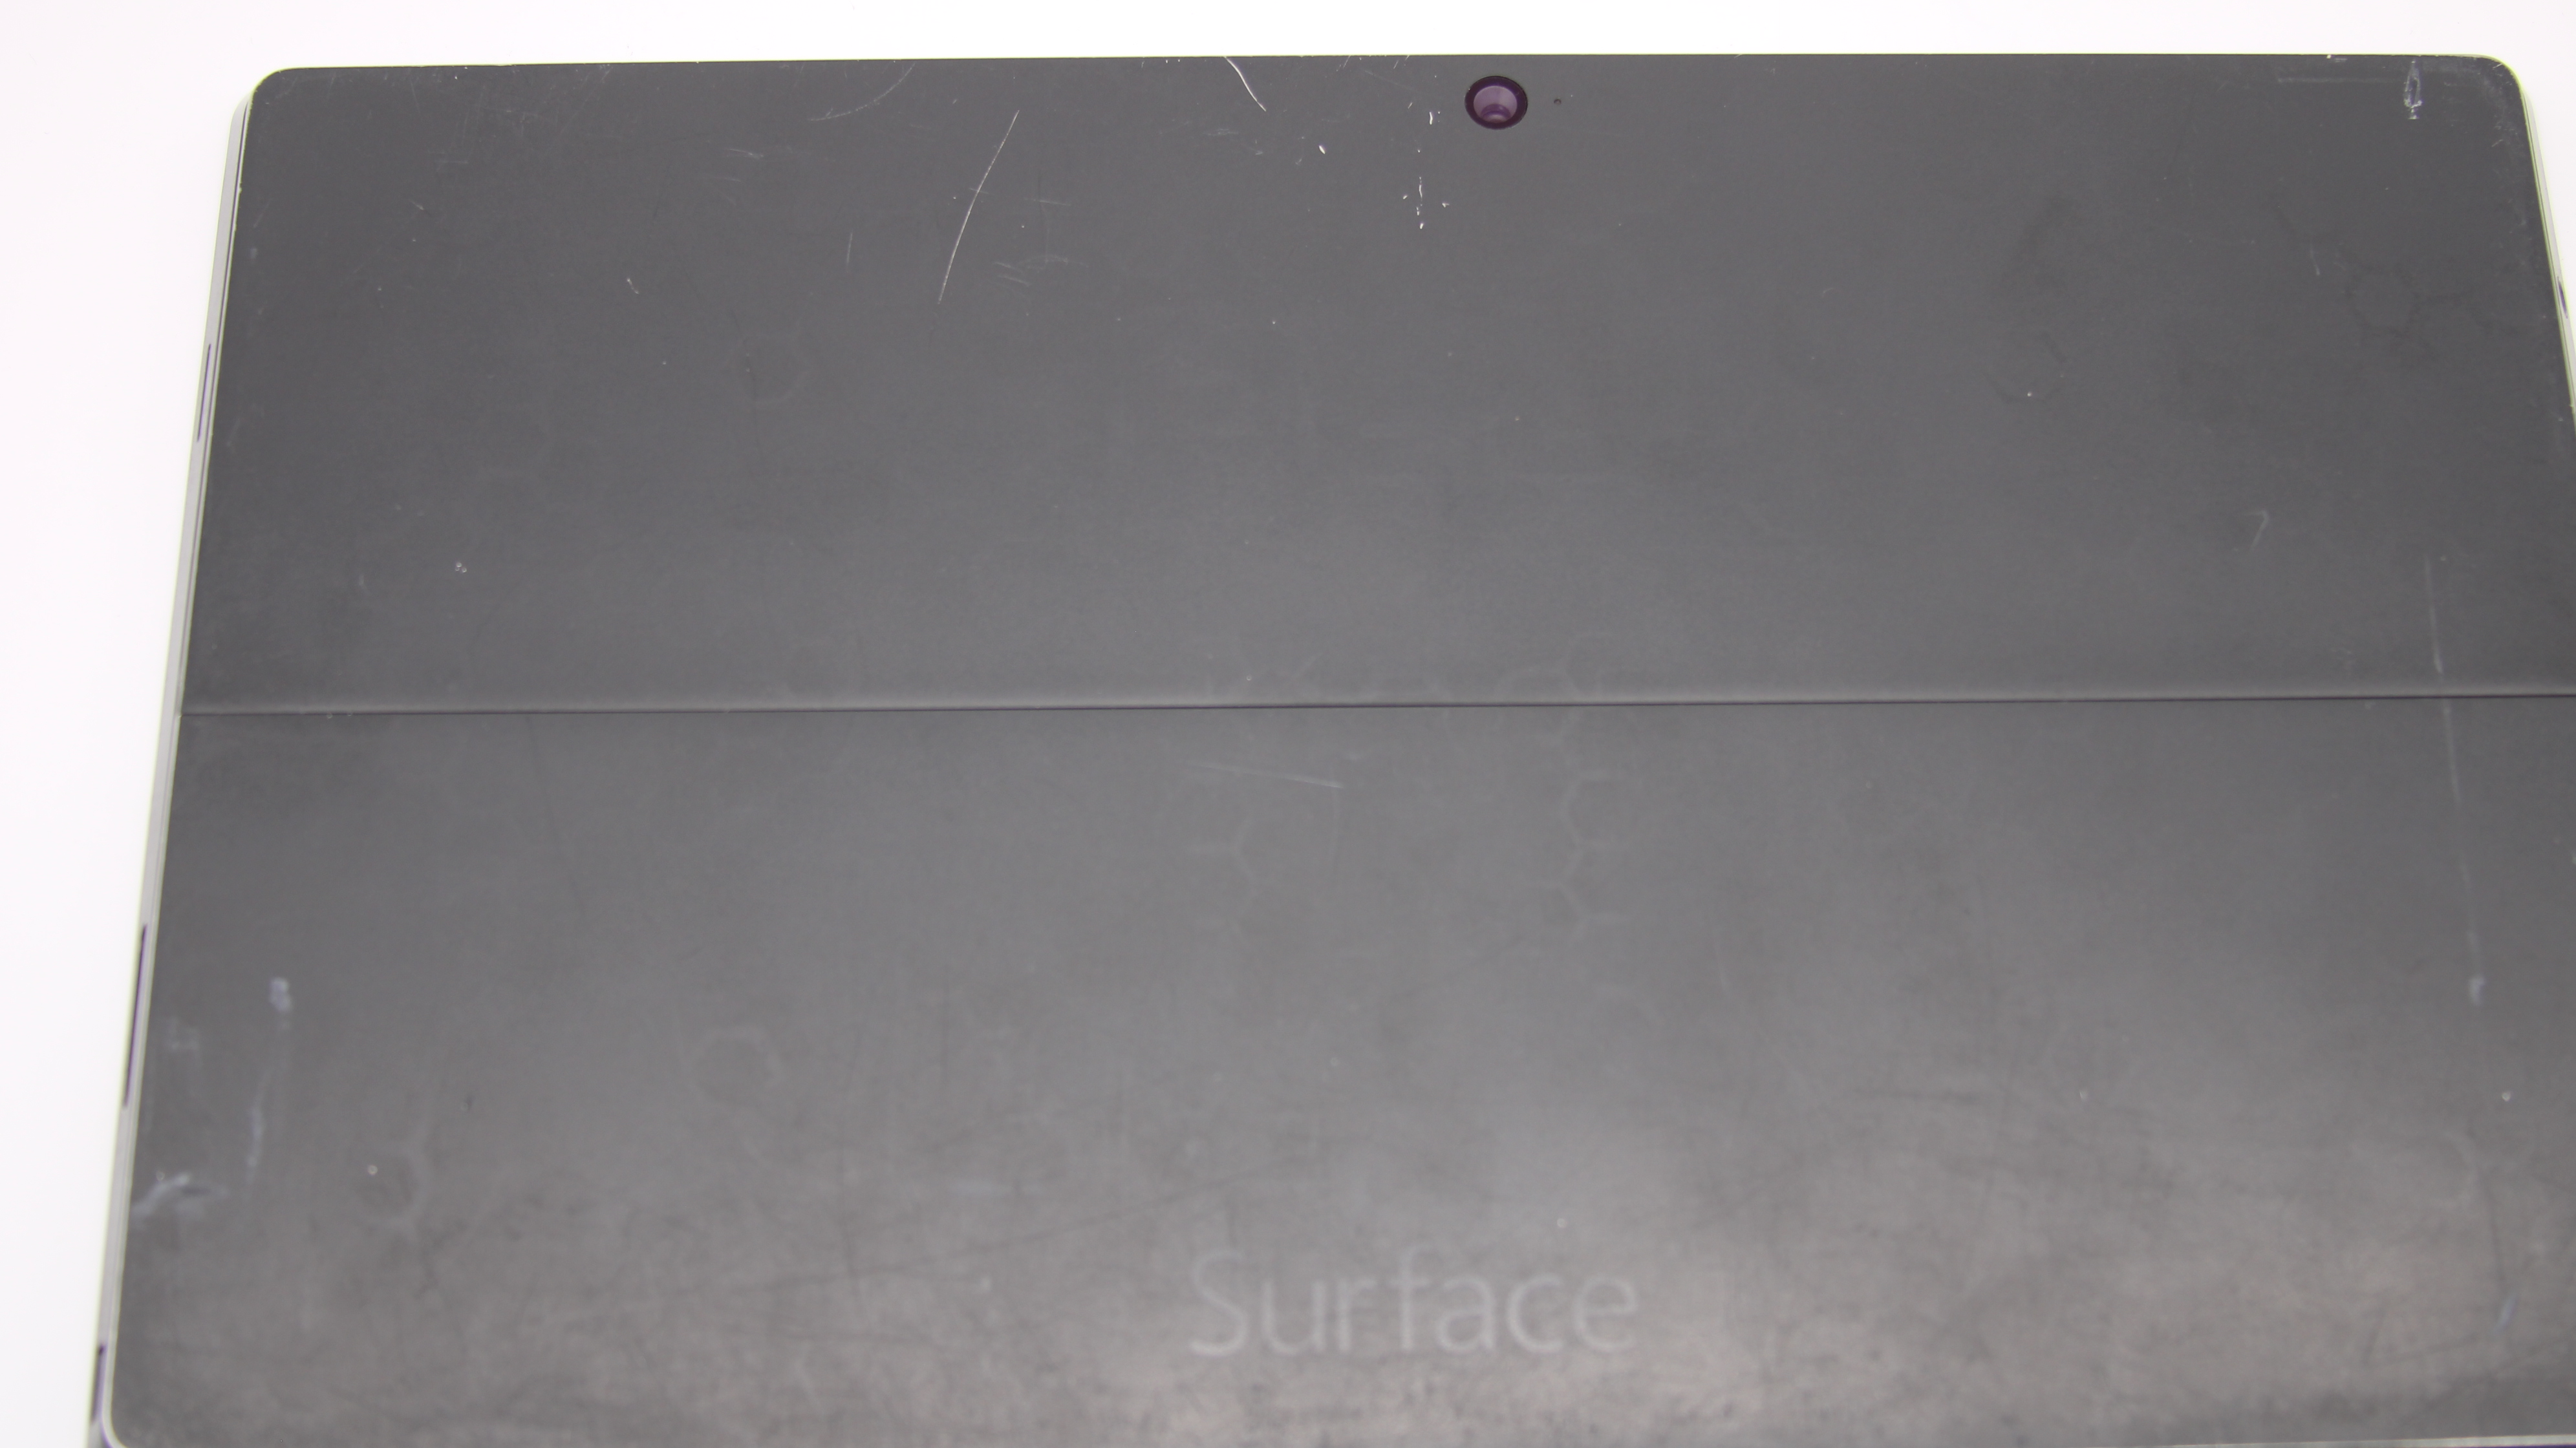 Microsoft Surface Pro 2 1601 Tablet I5-4200U 4GB RAM 128GB SSD Win 10 Pro